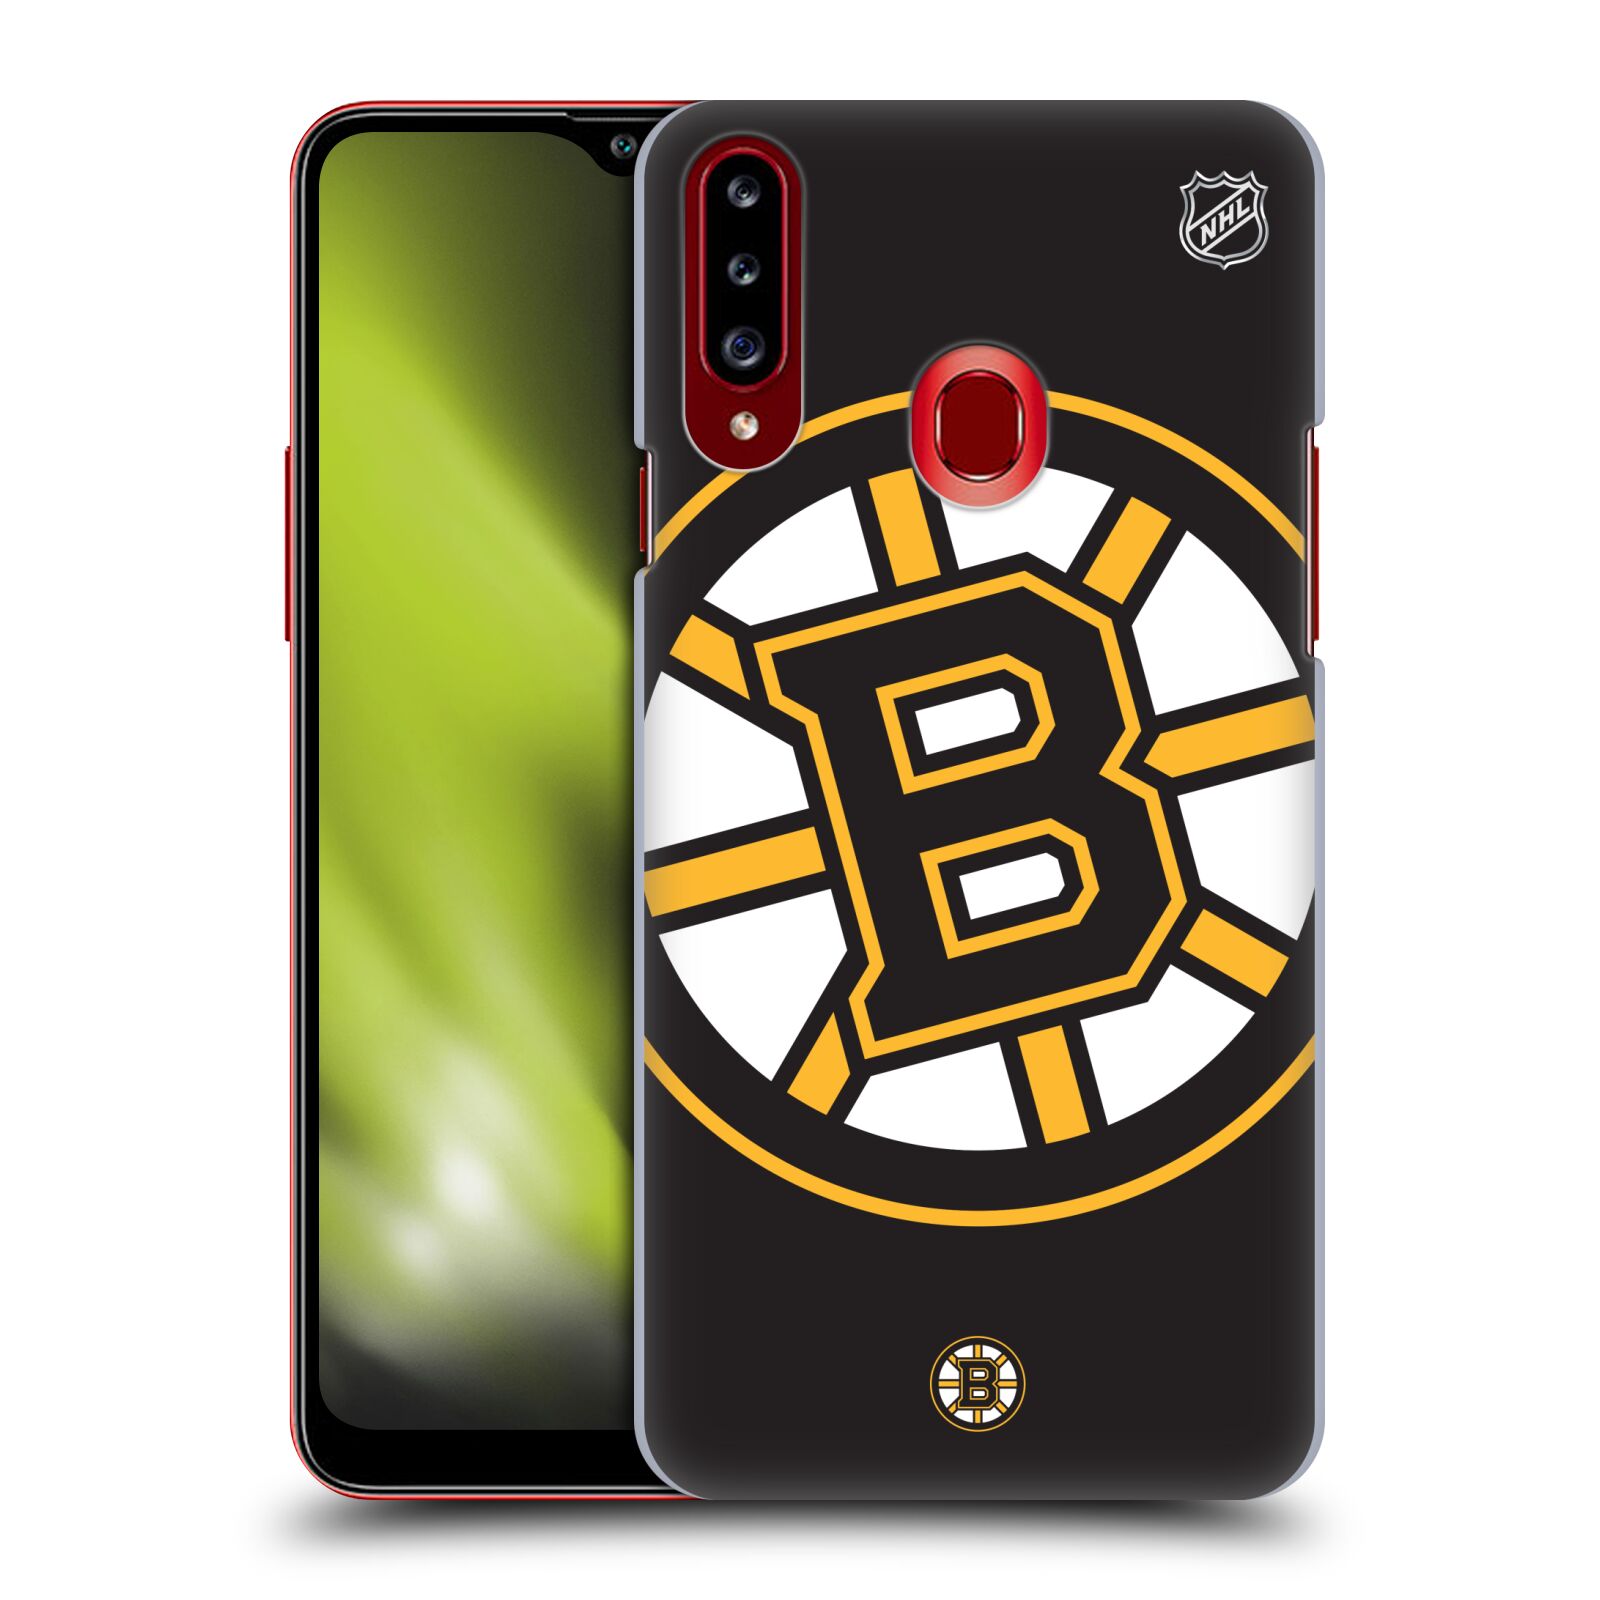 Pouzdro na mobil Samsung Galaxy A20s - HEAD CASE - Hokej NHL - Boston Bruins - velký znak